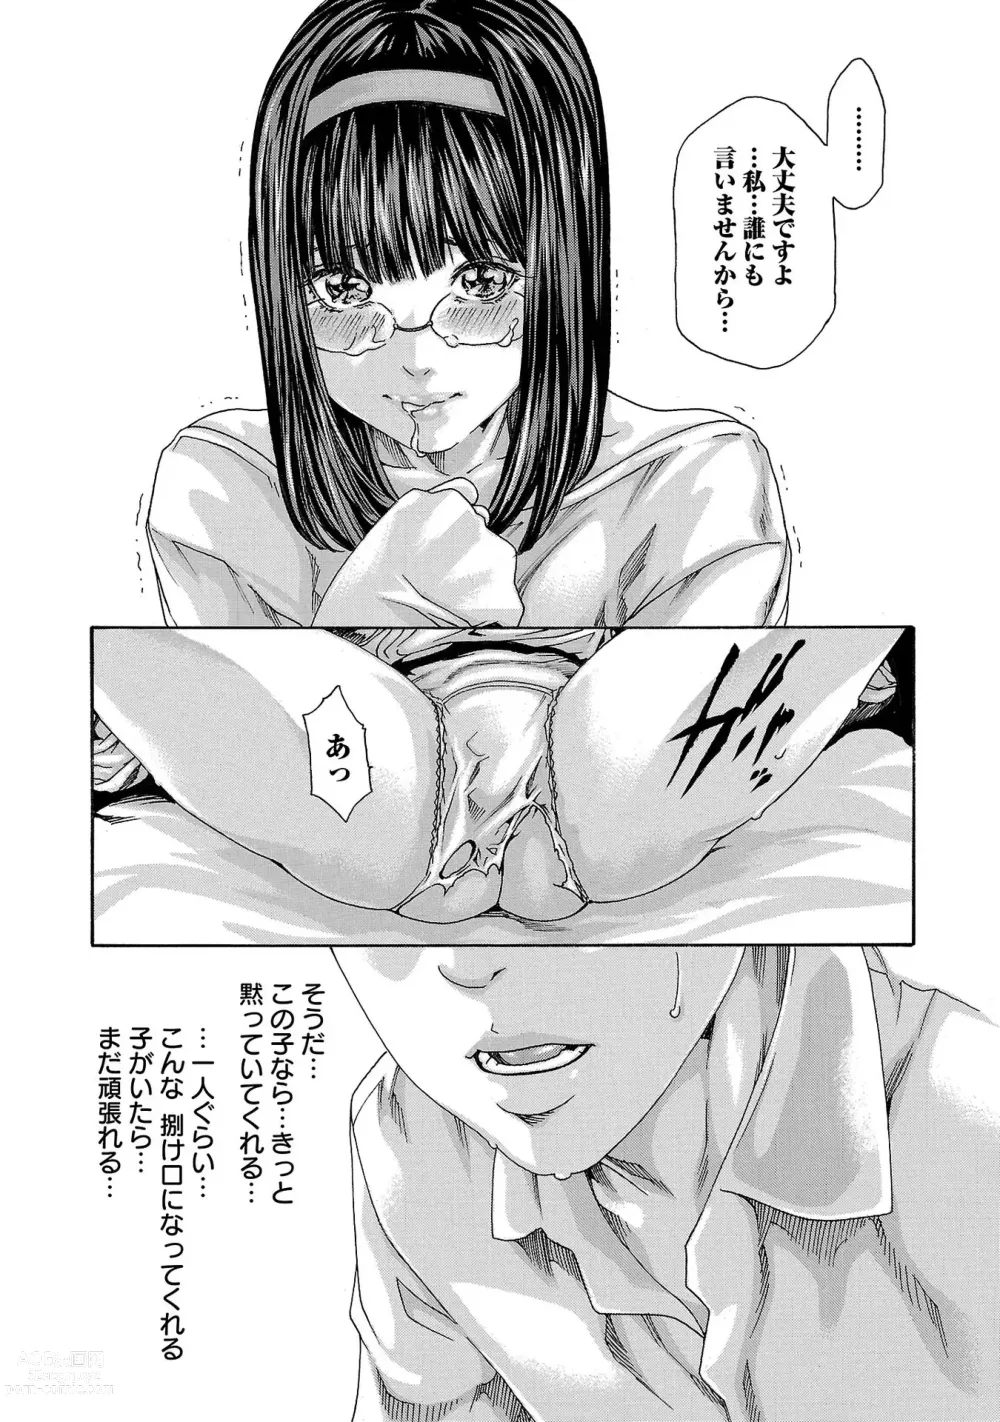 Page 31 of manga sense volume 13